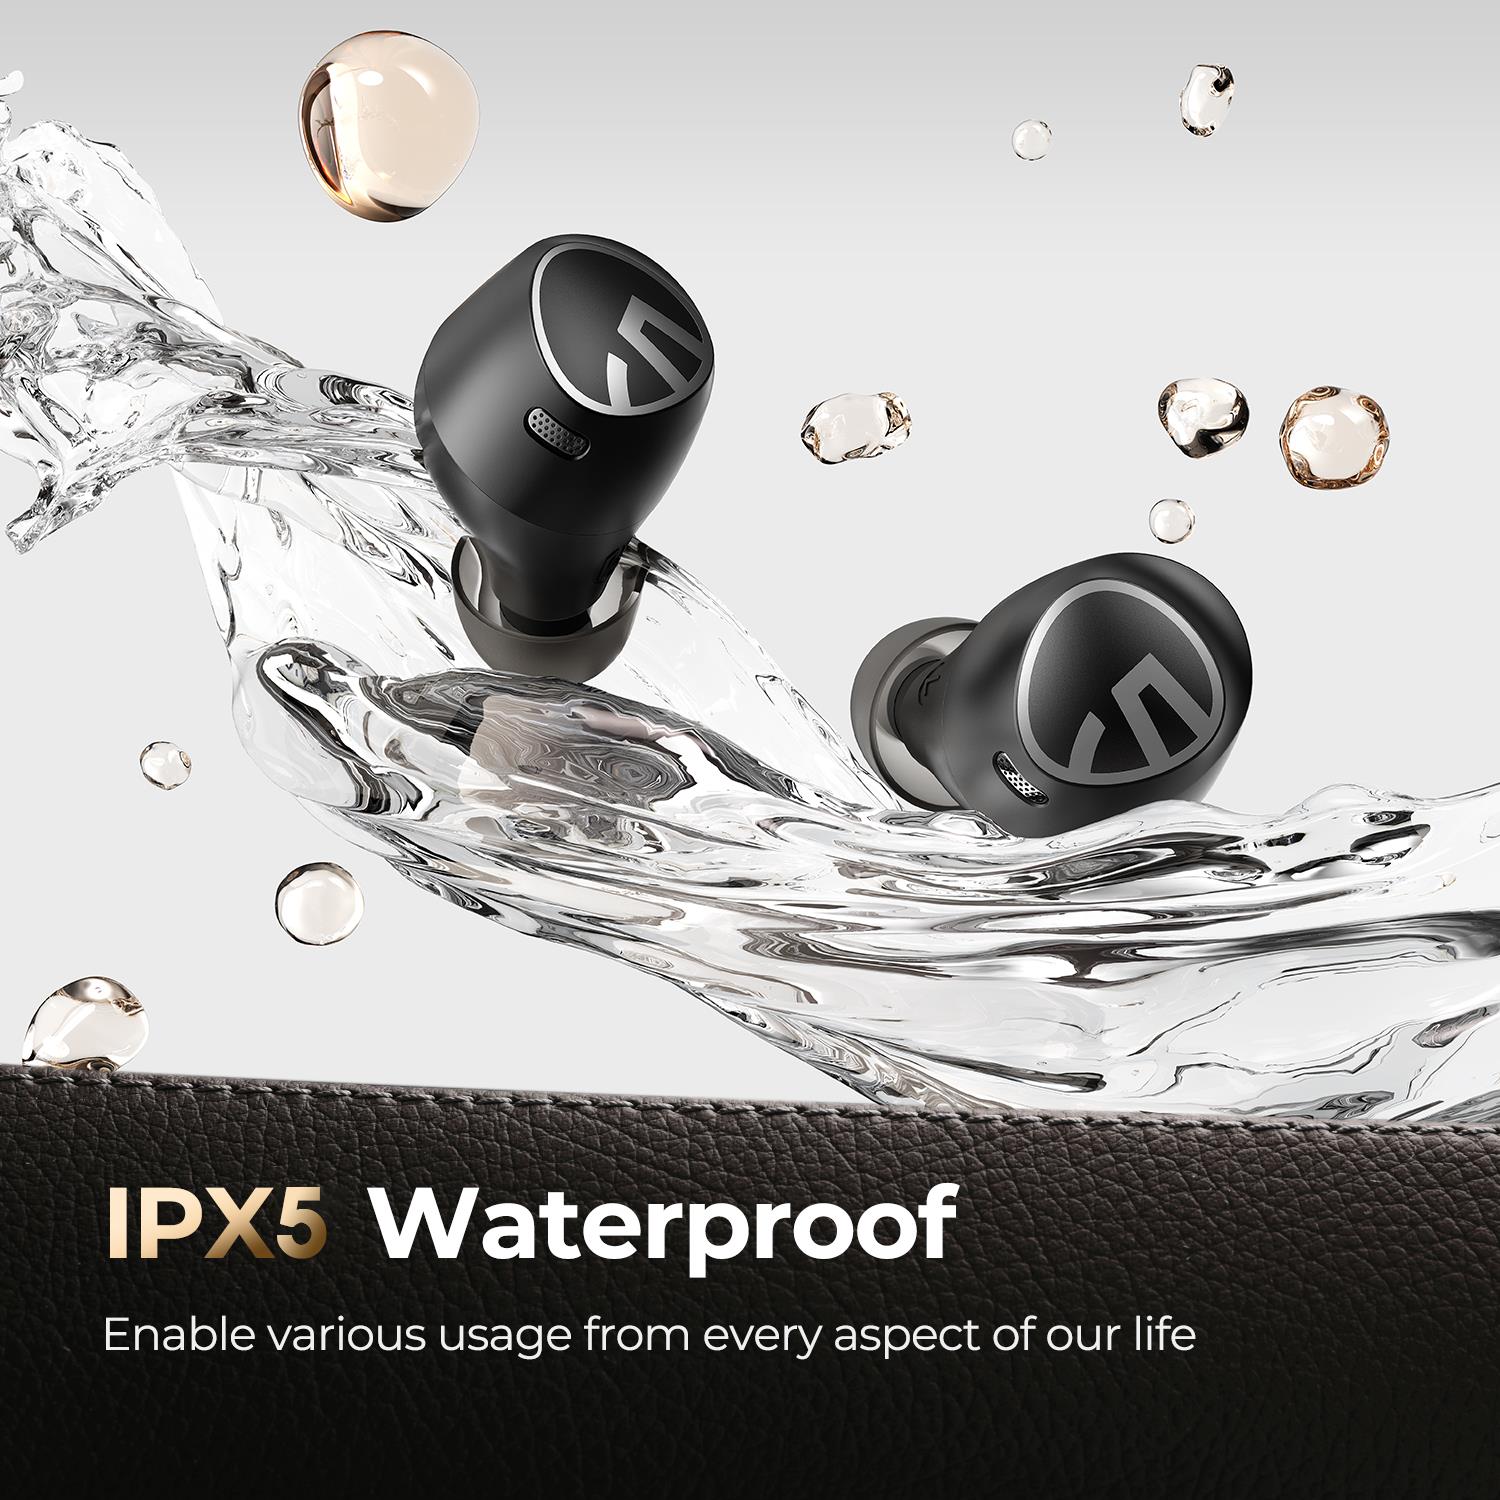 Soundpeats Free2 Classic: thiết kế hiện đại, pin dùng tới 30 giờ, micro chống bụi cao cấp, chống nước IPX5 - Ảnh 4.